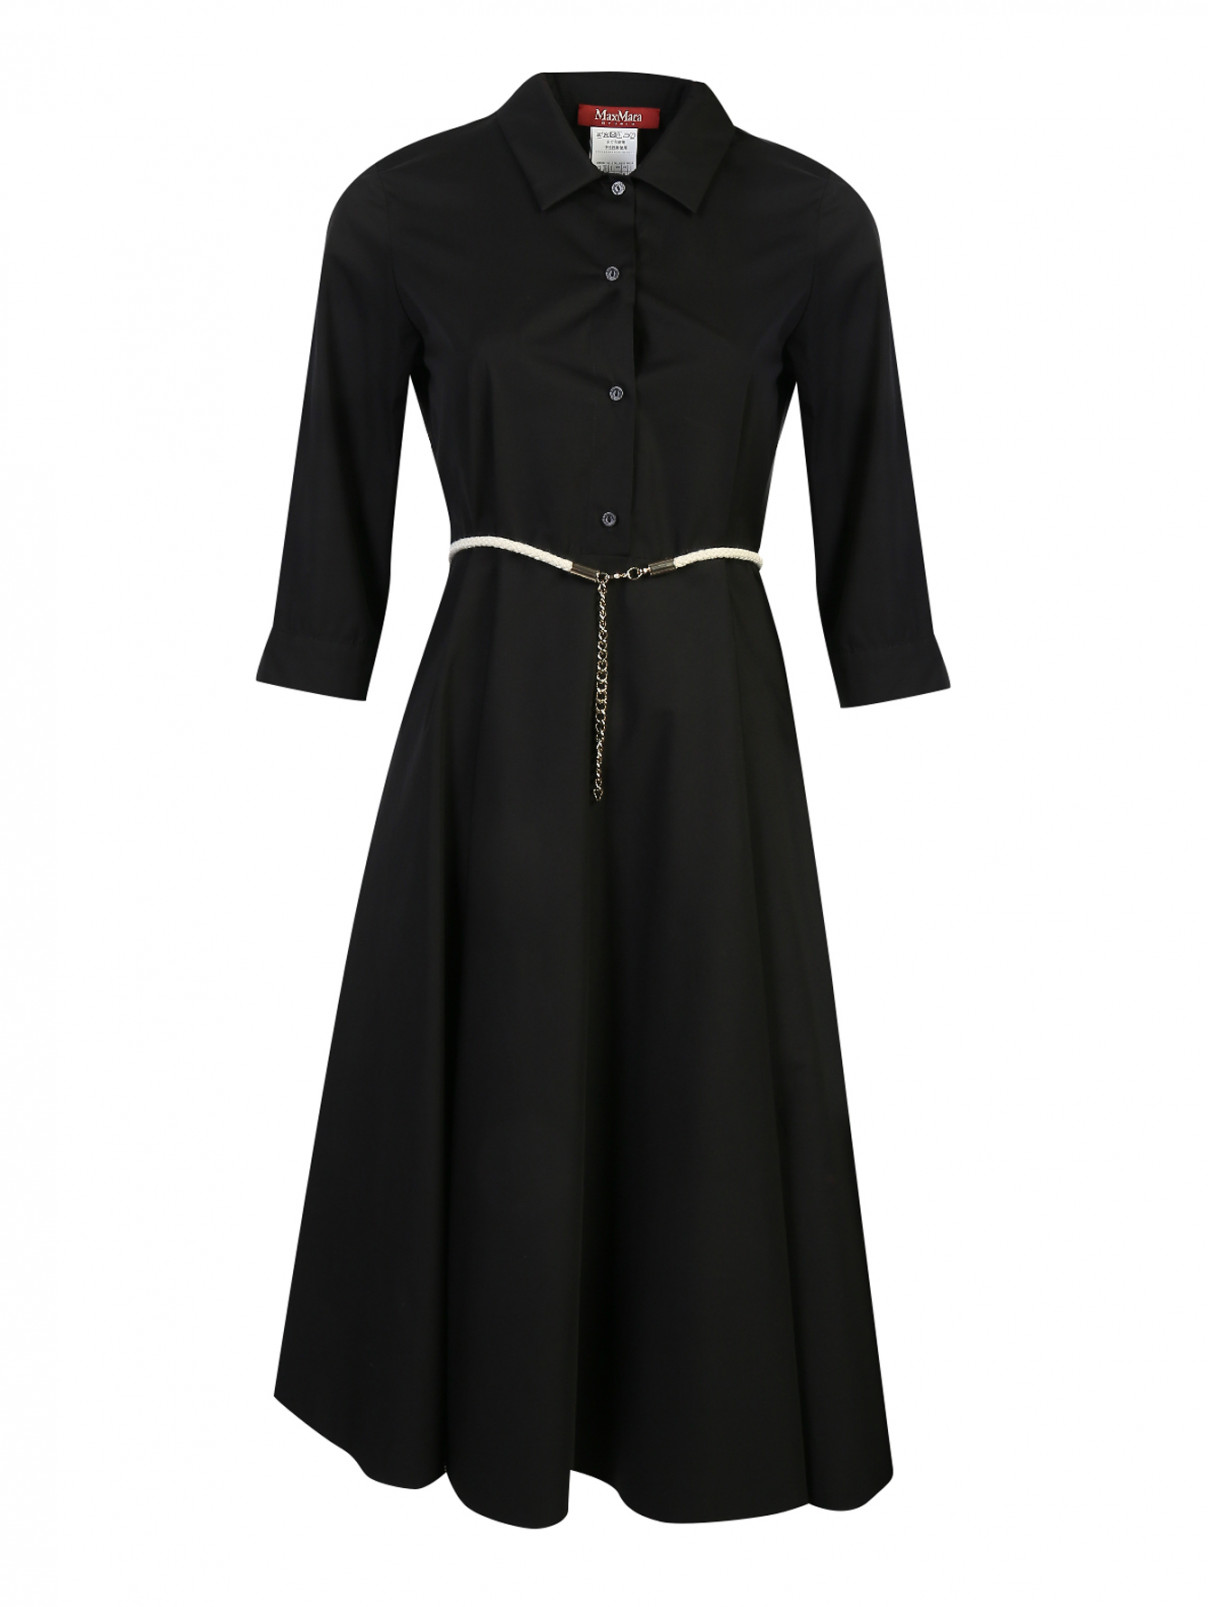 Платье из хлопка с расклешенной юбкой Max Mara  –  Общий вид  – Цвет:  Черный